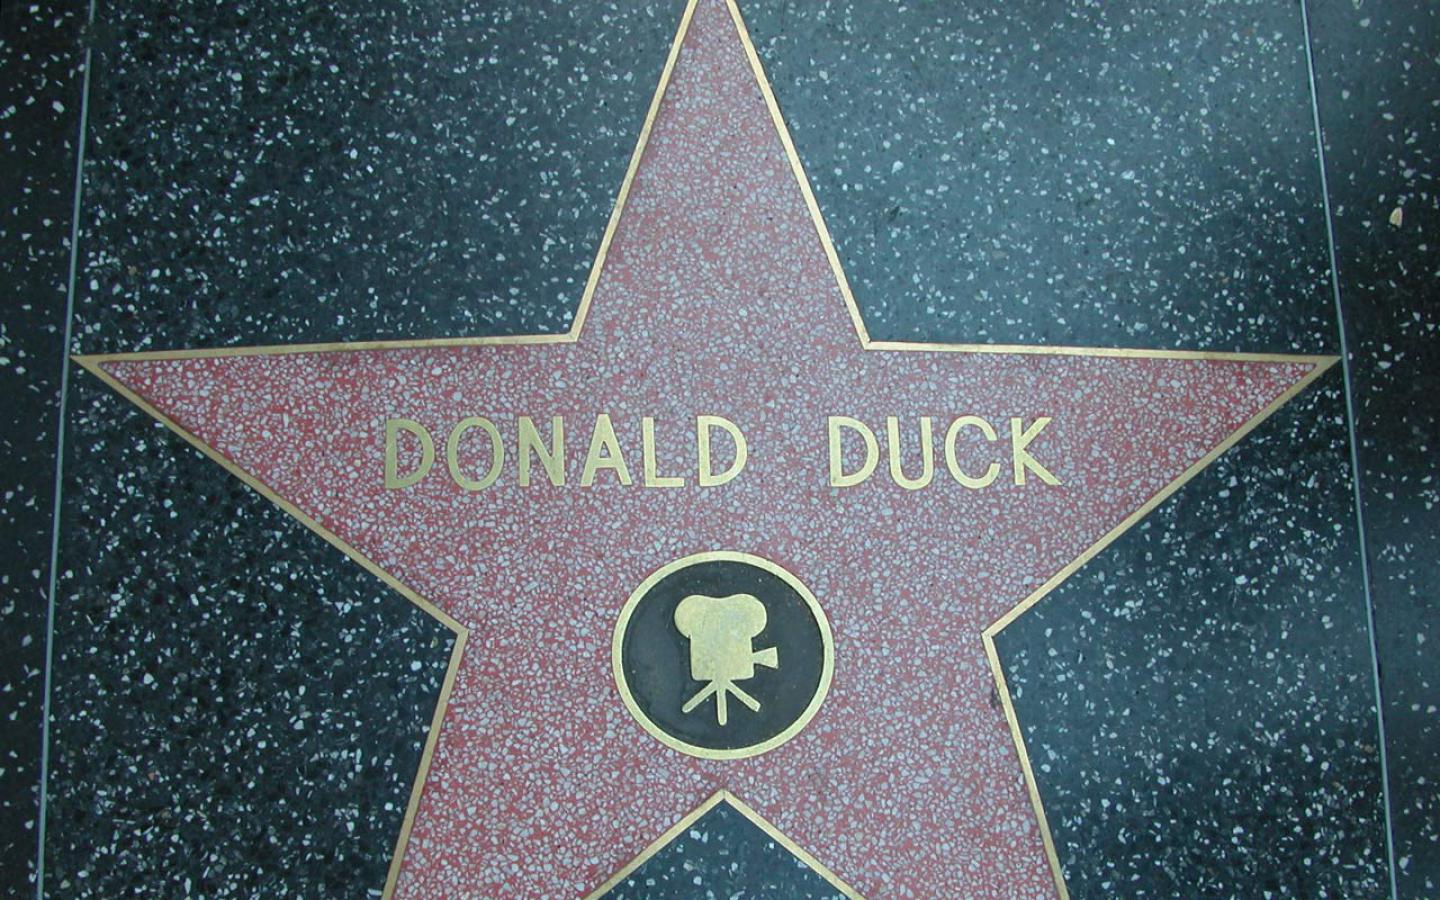 Donald Duck Wallpaper Los Angeles 41400 Desktop Wallpapers | Top ...